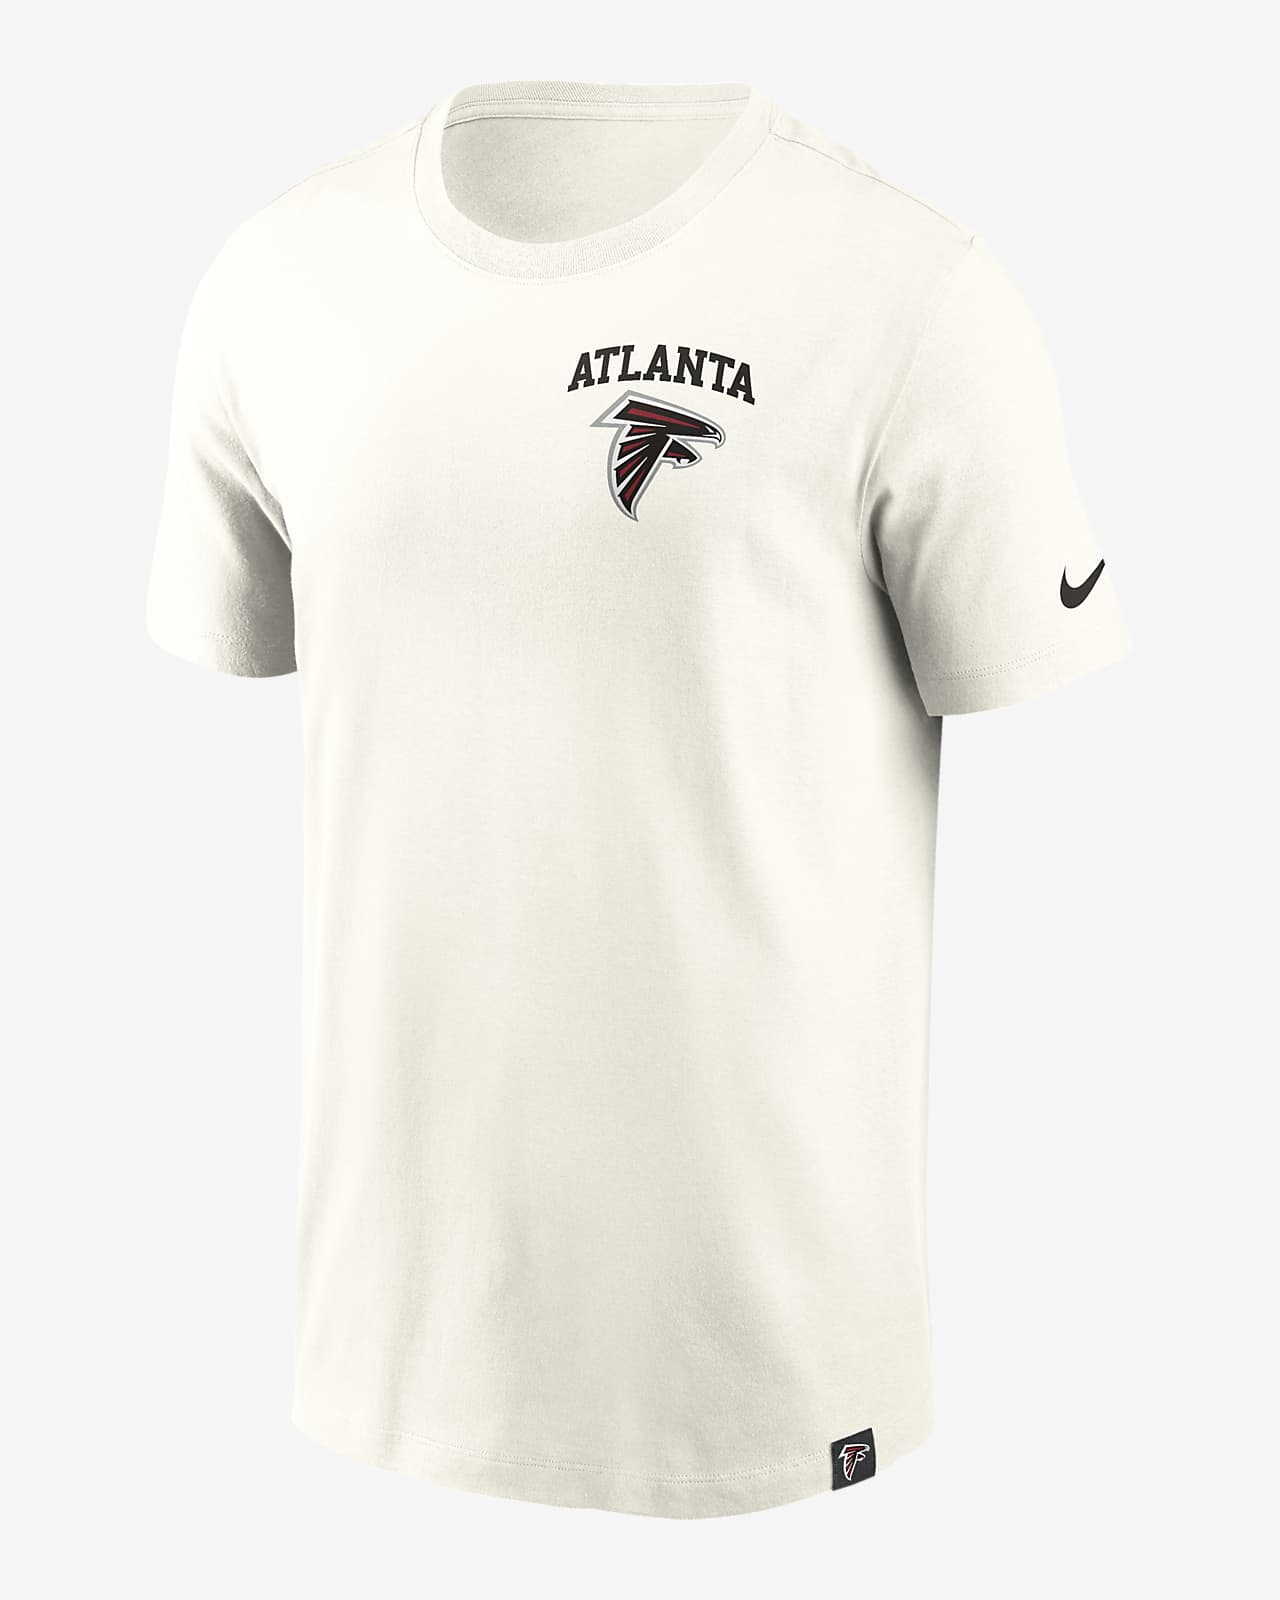 Atlanta Falcons Blitz Essential Men's Nike NFL T-Shirt